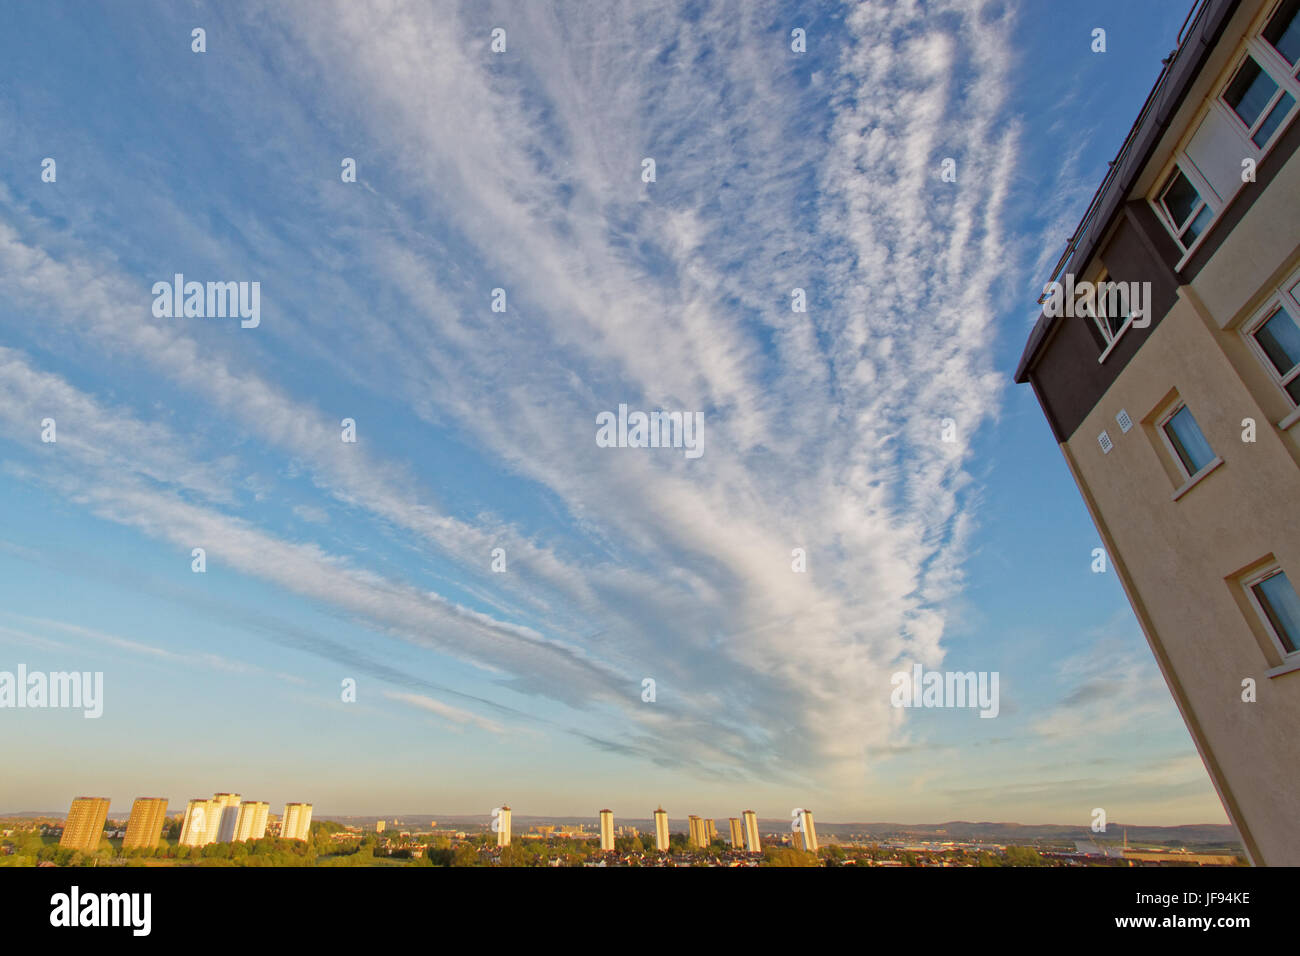 Vista panorámica de Glasgow consejo de gran altura apartamentos con Forefront indicador plana y espectacular cielo para subrayar los problemas recientes con este tipo de vivienda Foto de stock